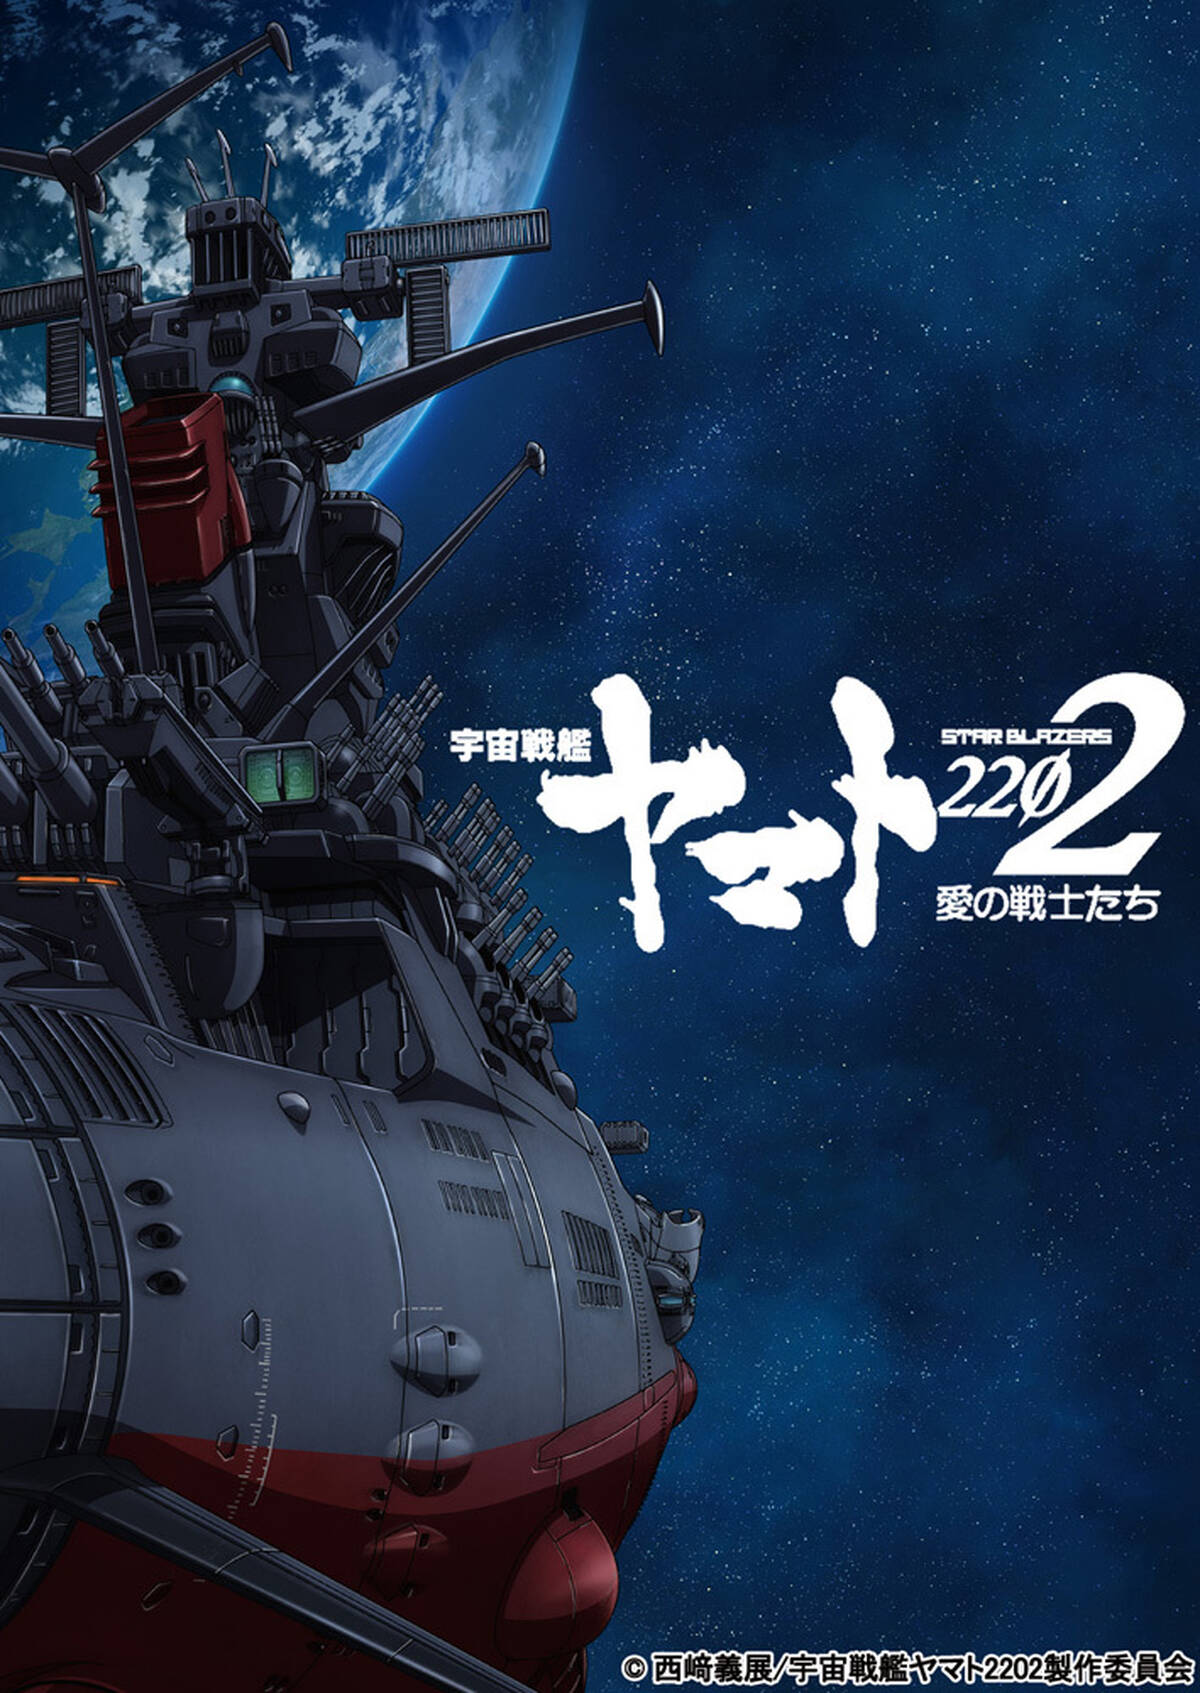 アニメ 宇宙戦艦ヤマト2202 愛の戦士たち は全七章構成 第一章は2017年2月25日より劇場上映 アキバ総研